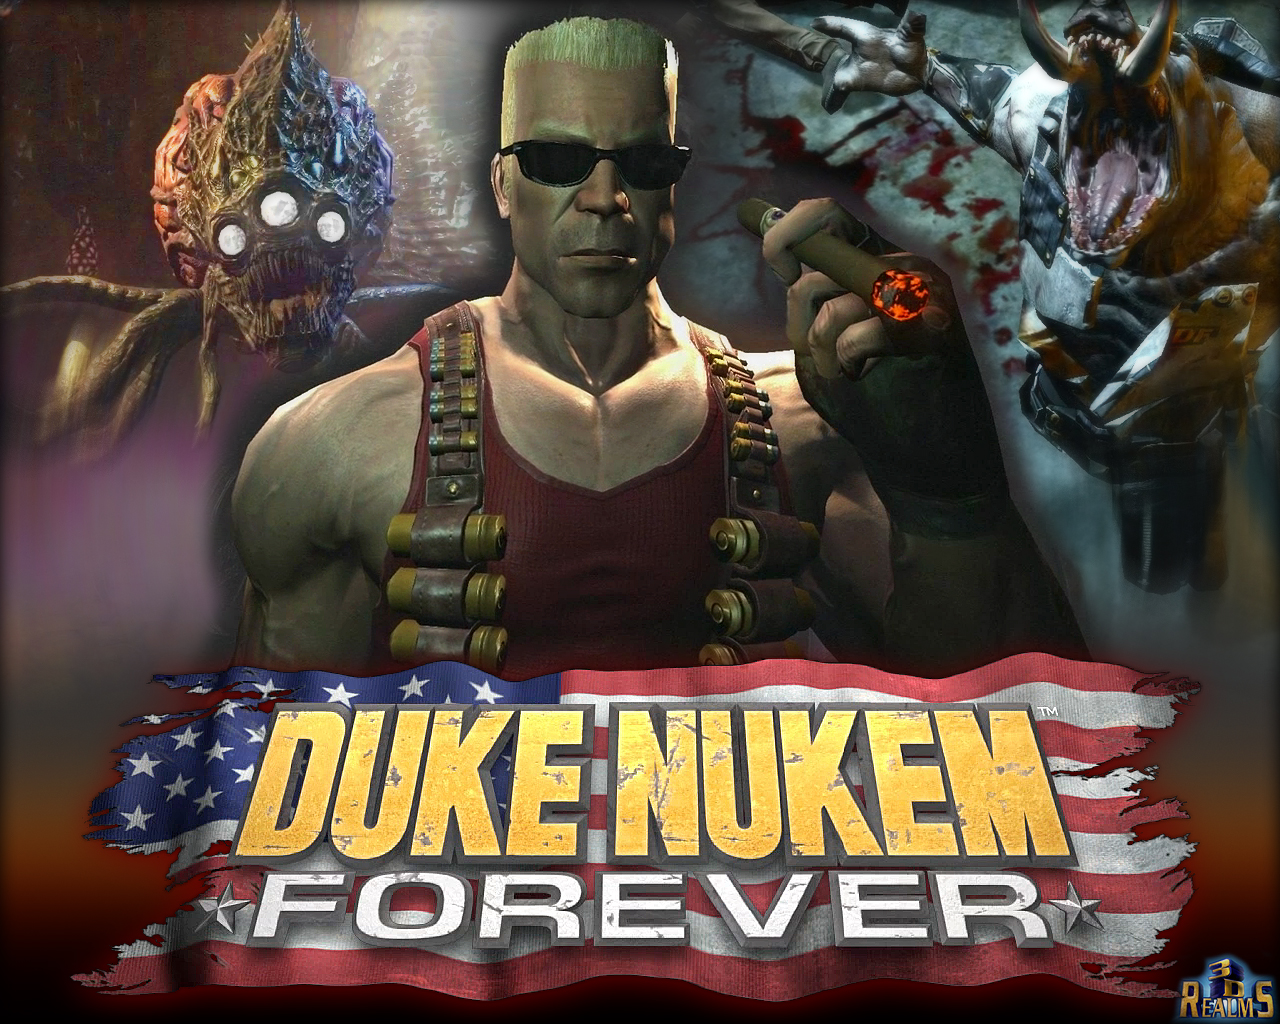 10 Worst Video Games in History and Duke Nukem Forever